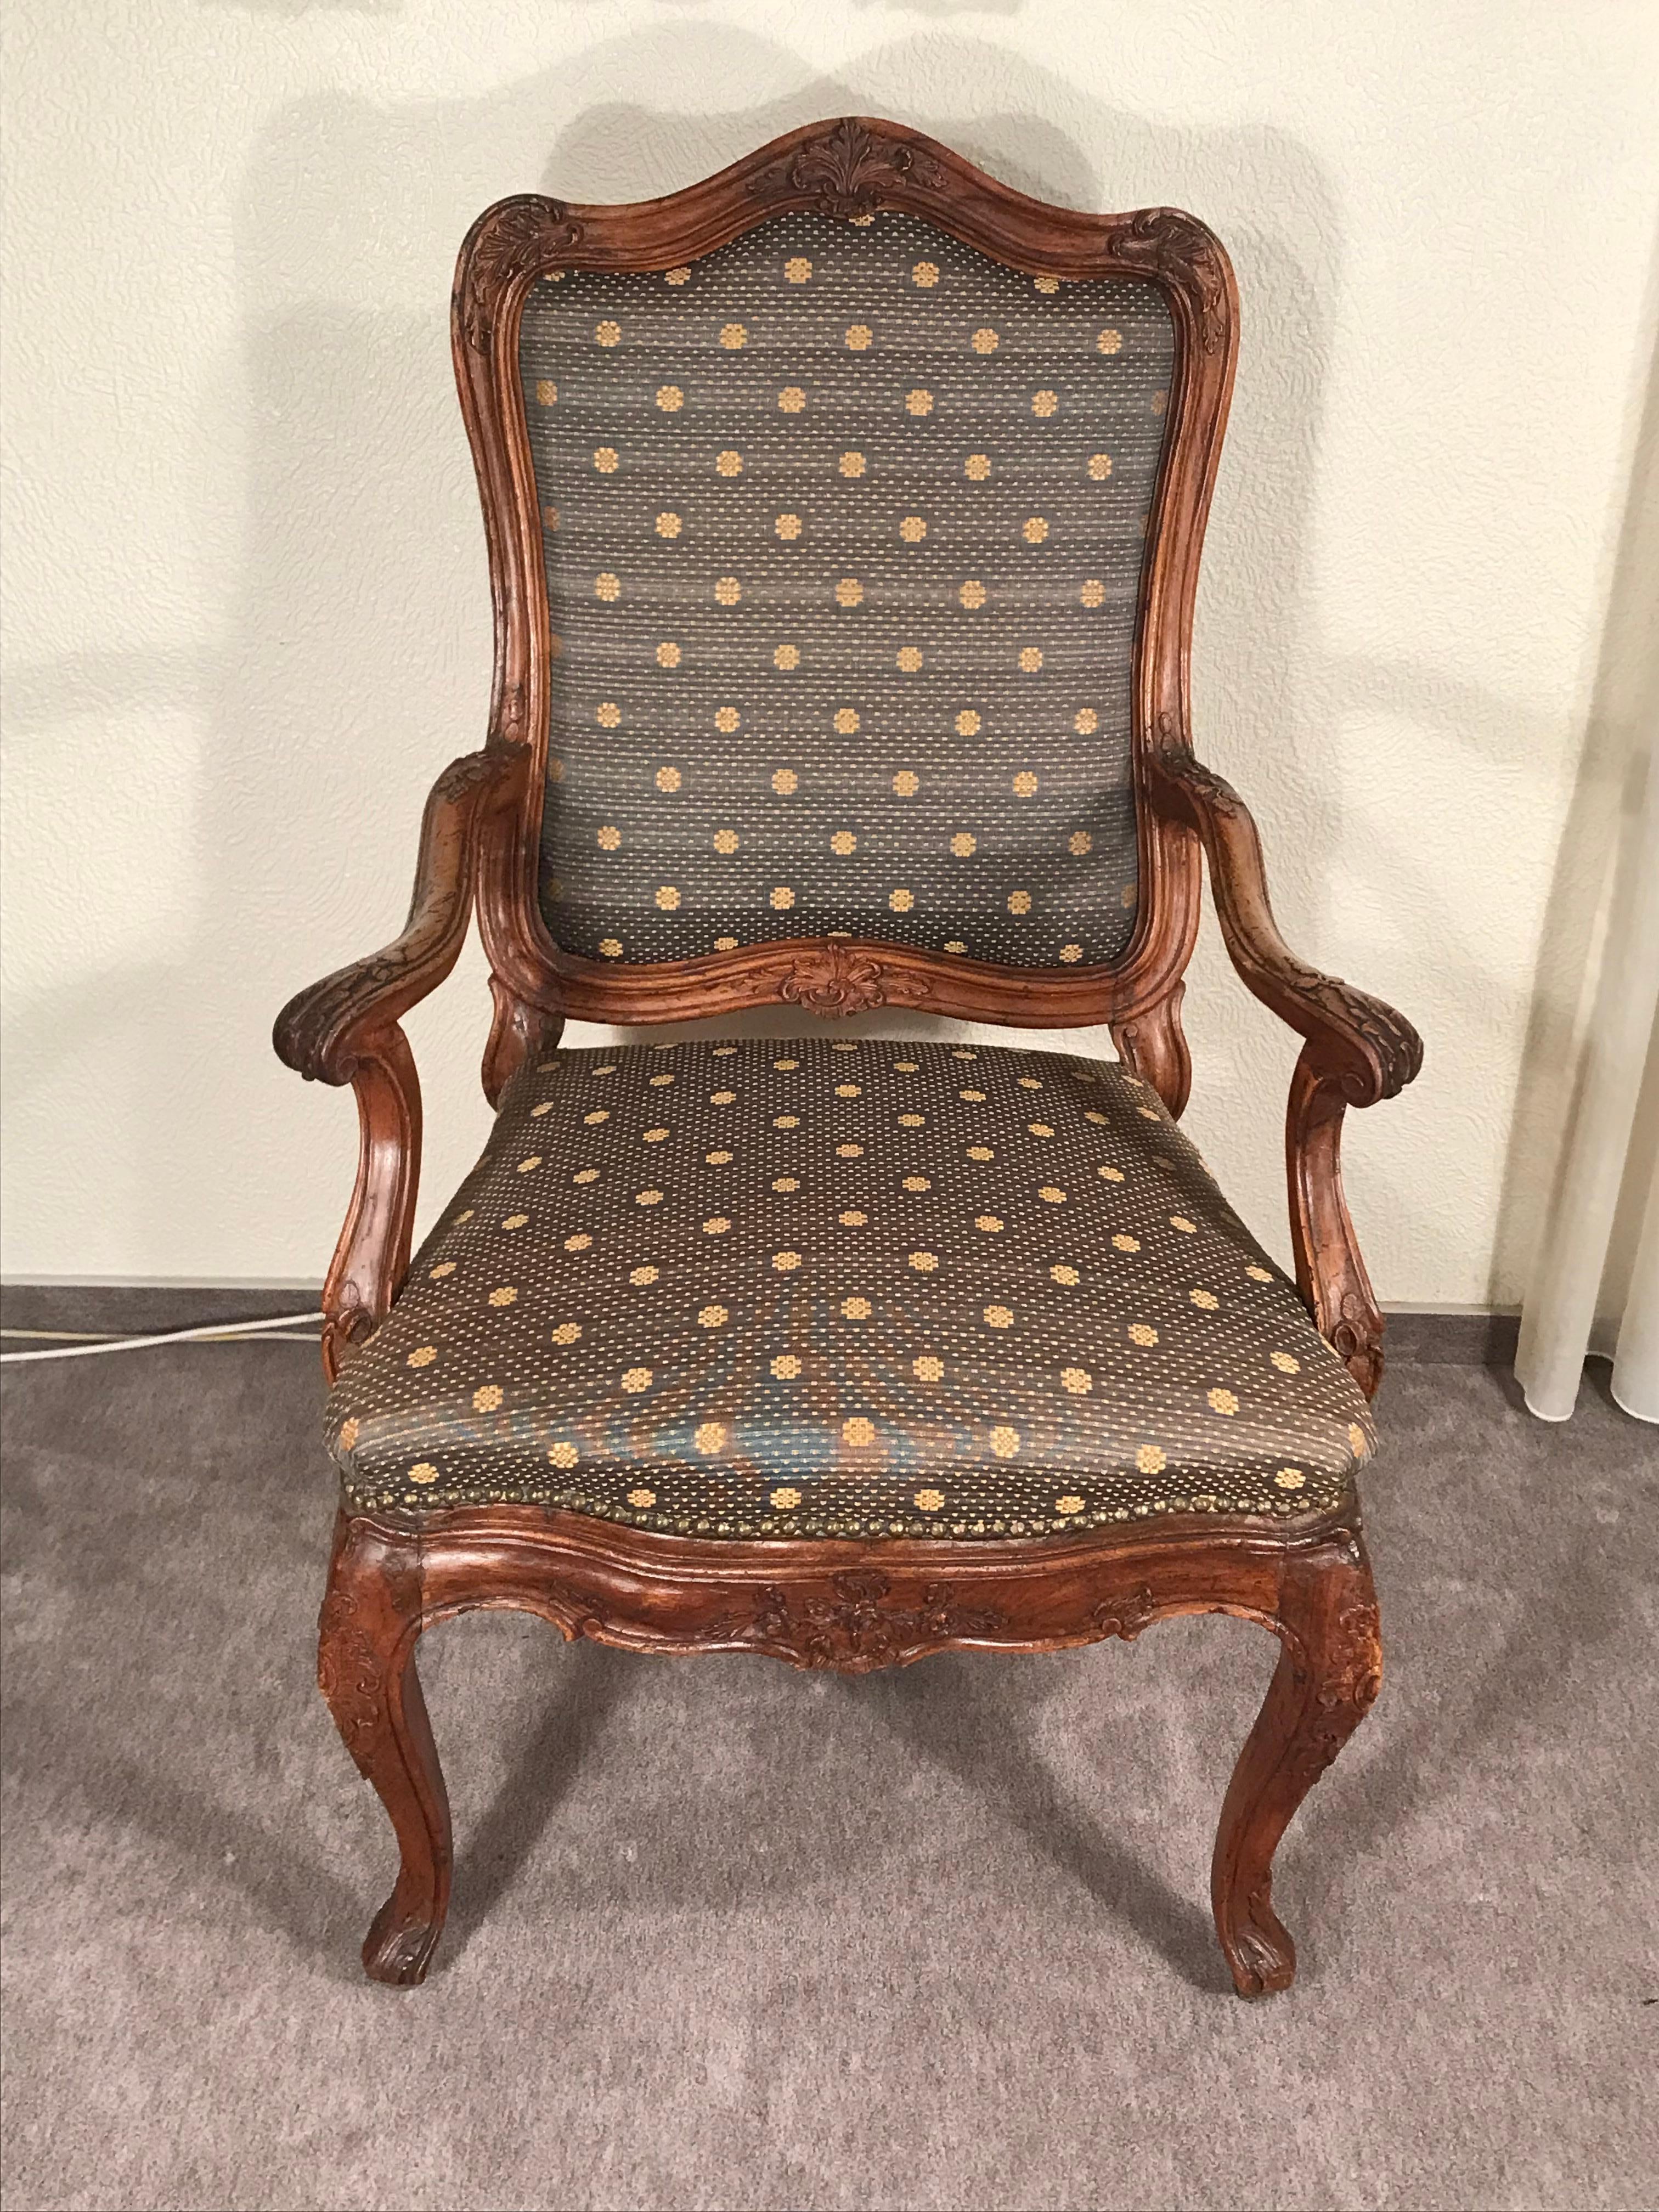 Origineller und einzigartiger Barocksessel. Dieser schöne Sessel stammt aus den Jahren 1750-60 und kommt aus Süddeutschland. Der Eichenstuhl zeichnet sich durch seine schönen handgeschnitzten Details aus. Es ist in sehr gutem Zustand. Der Sessel